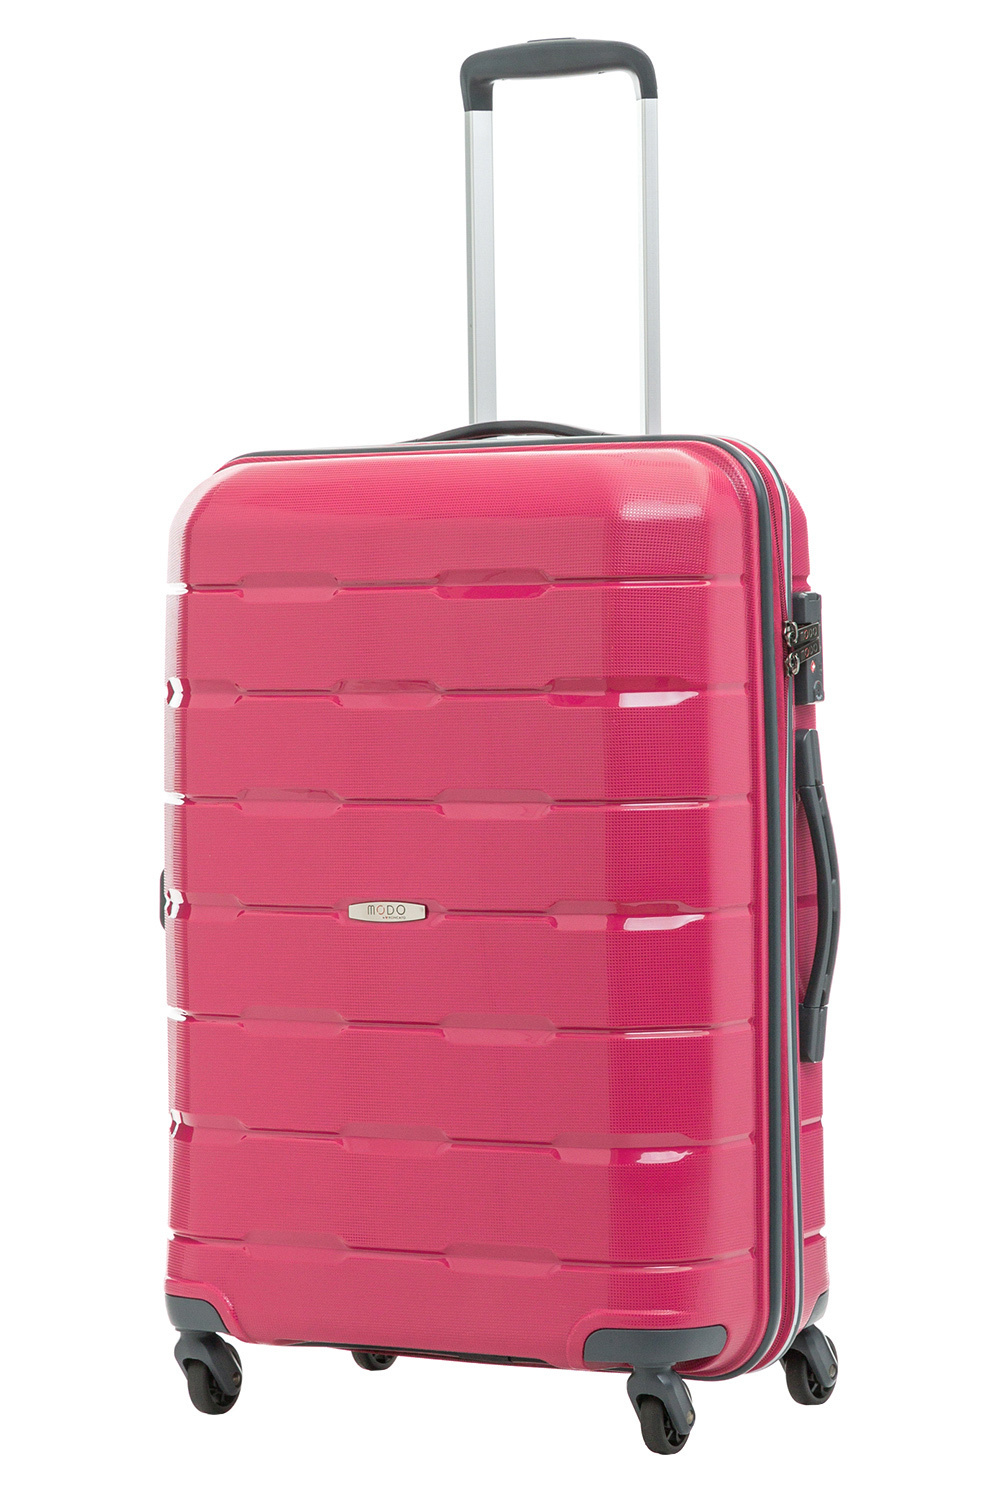 Размер чемодана средний M(56-70 см), что оптимально для путешествий на одну-две недели.